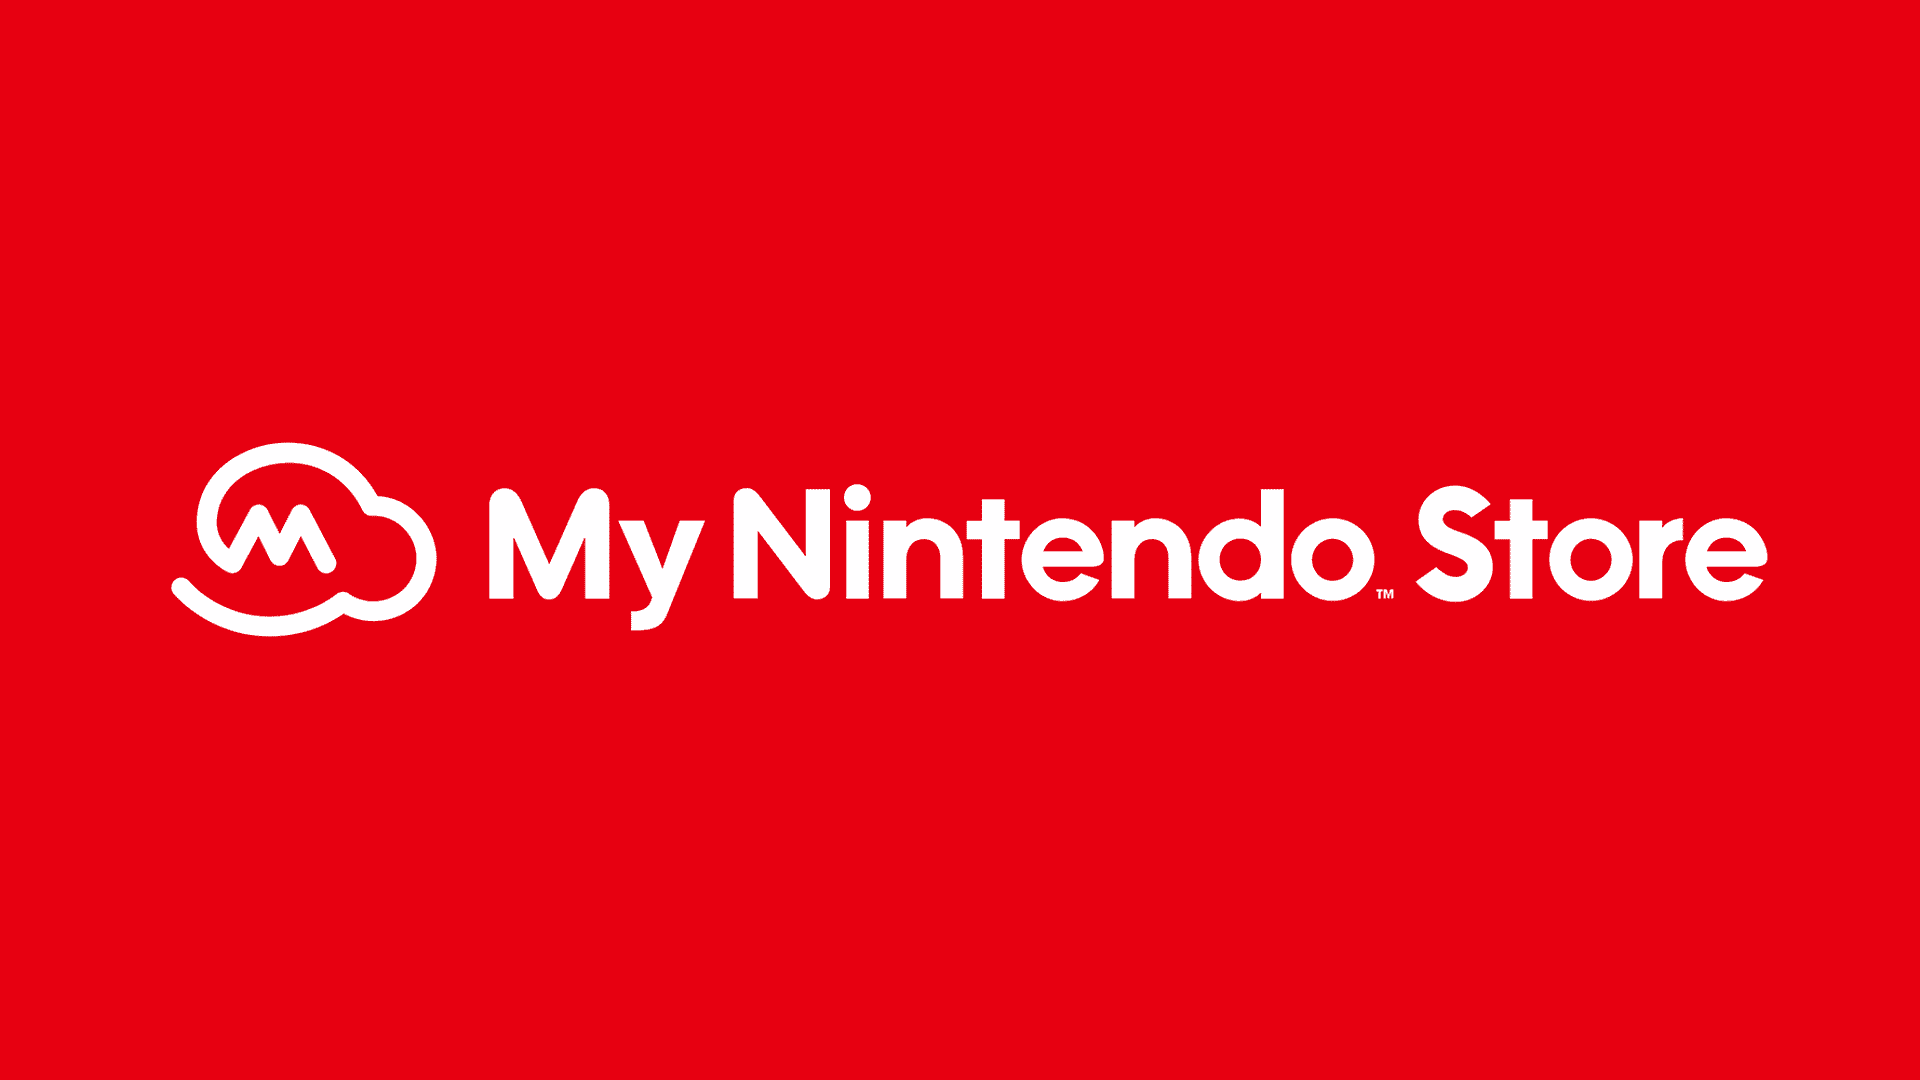 Nintendo renueva la imagen de su tienda online en Reino Unido y adopta el nombre de ‘My Nintendo Store’